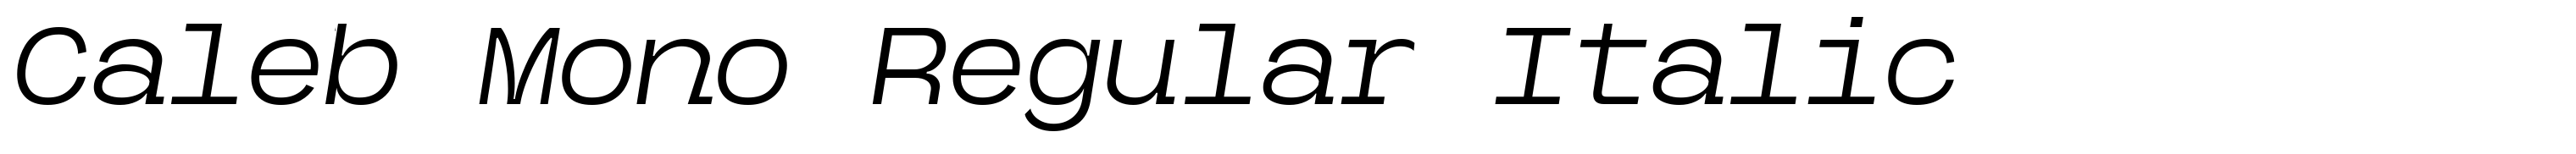 Caleb Mono Regular Italic